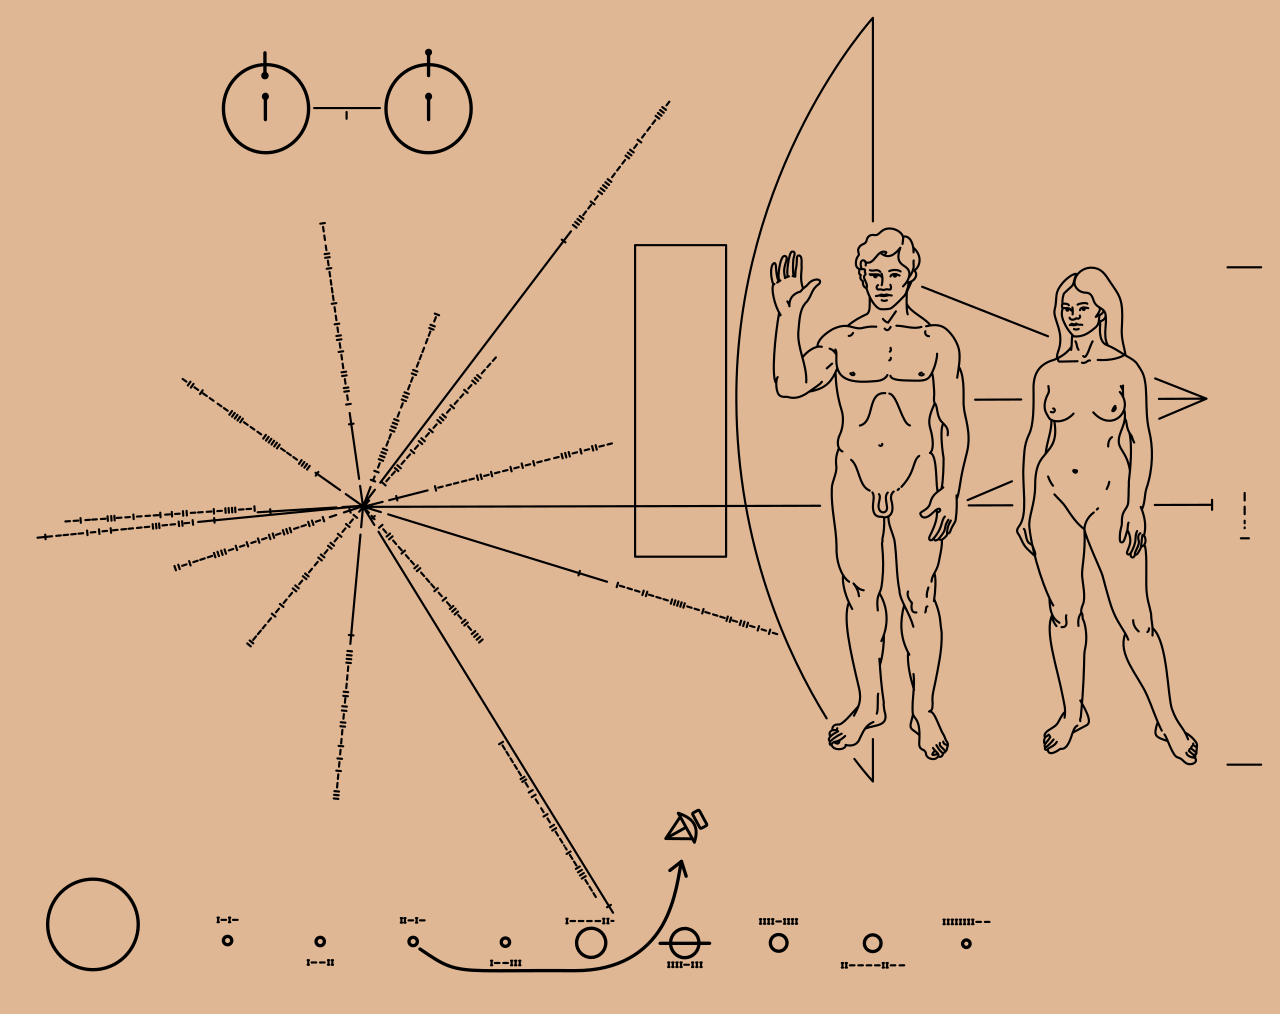 Пластинка з посланням для позаземних цивілізацій на борту Pioneer 10